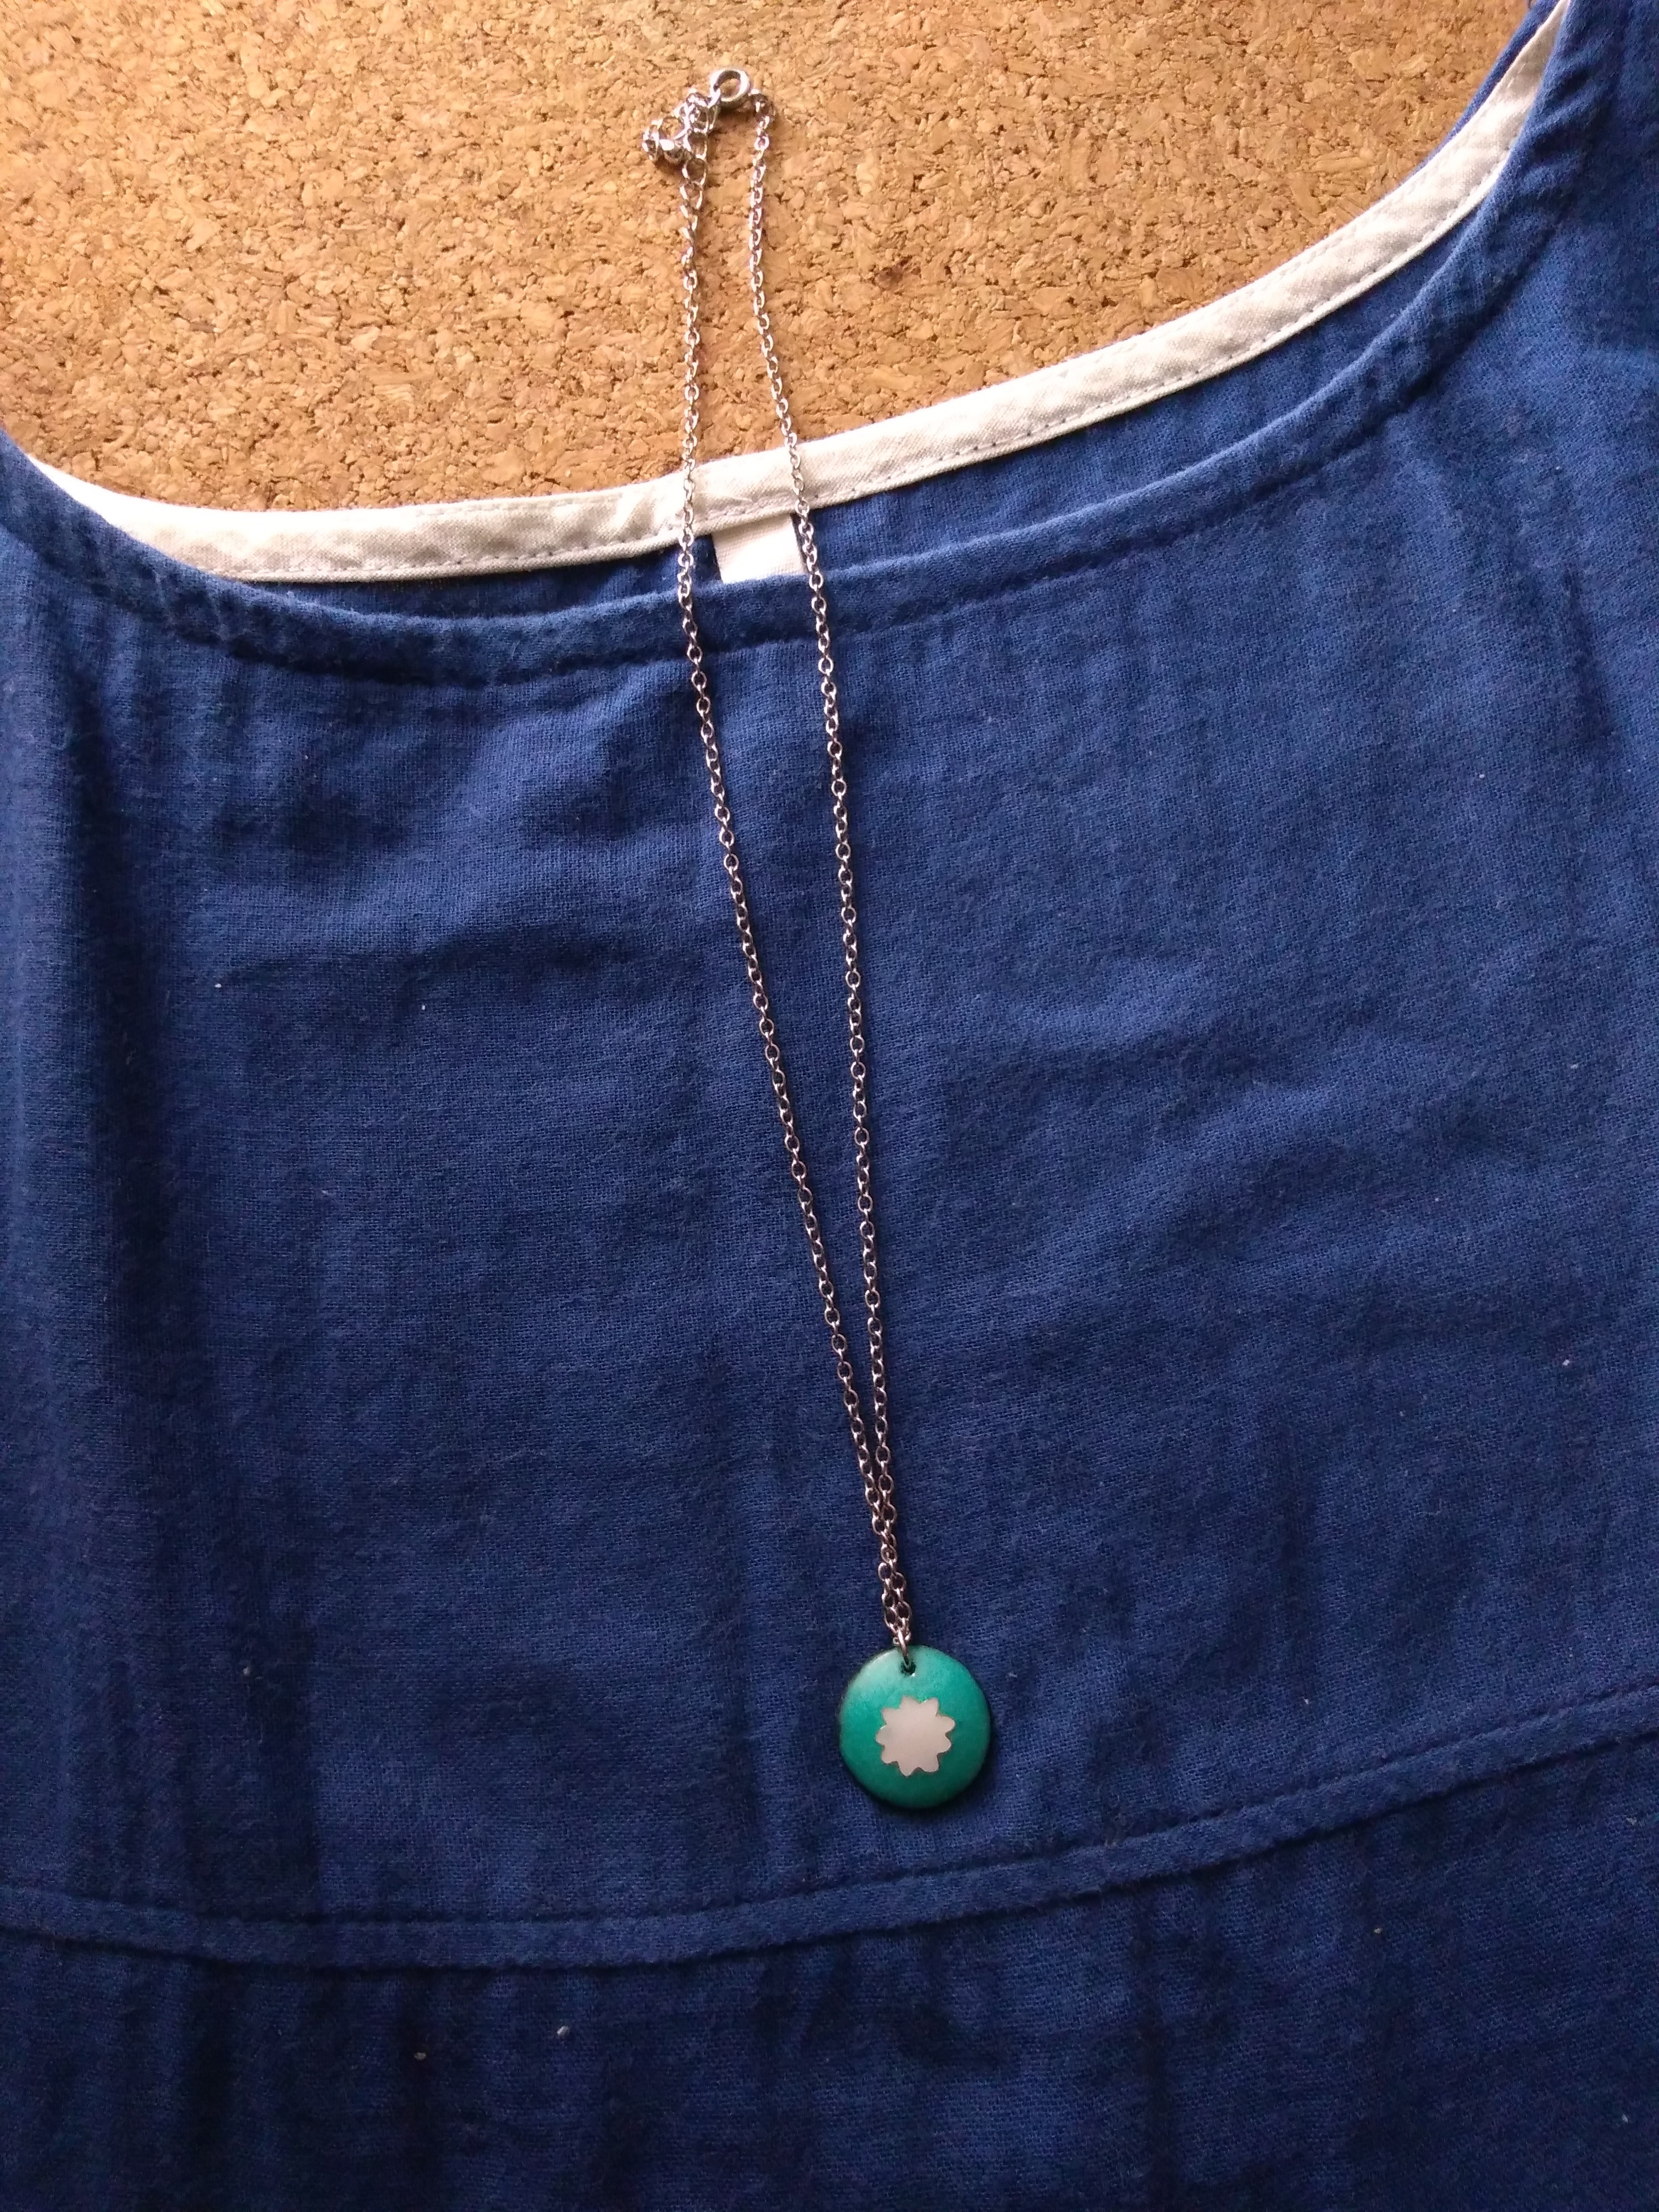 有線七宝 白のふわふわまるネックレス Iichi ハンドメイド クラフト作品 手仕事品の通販